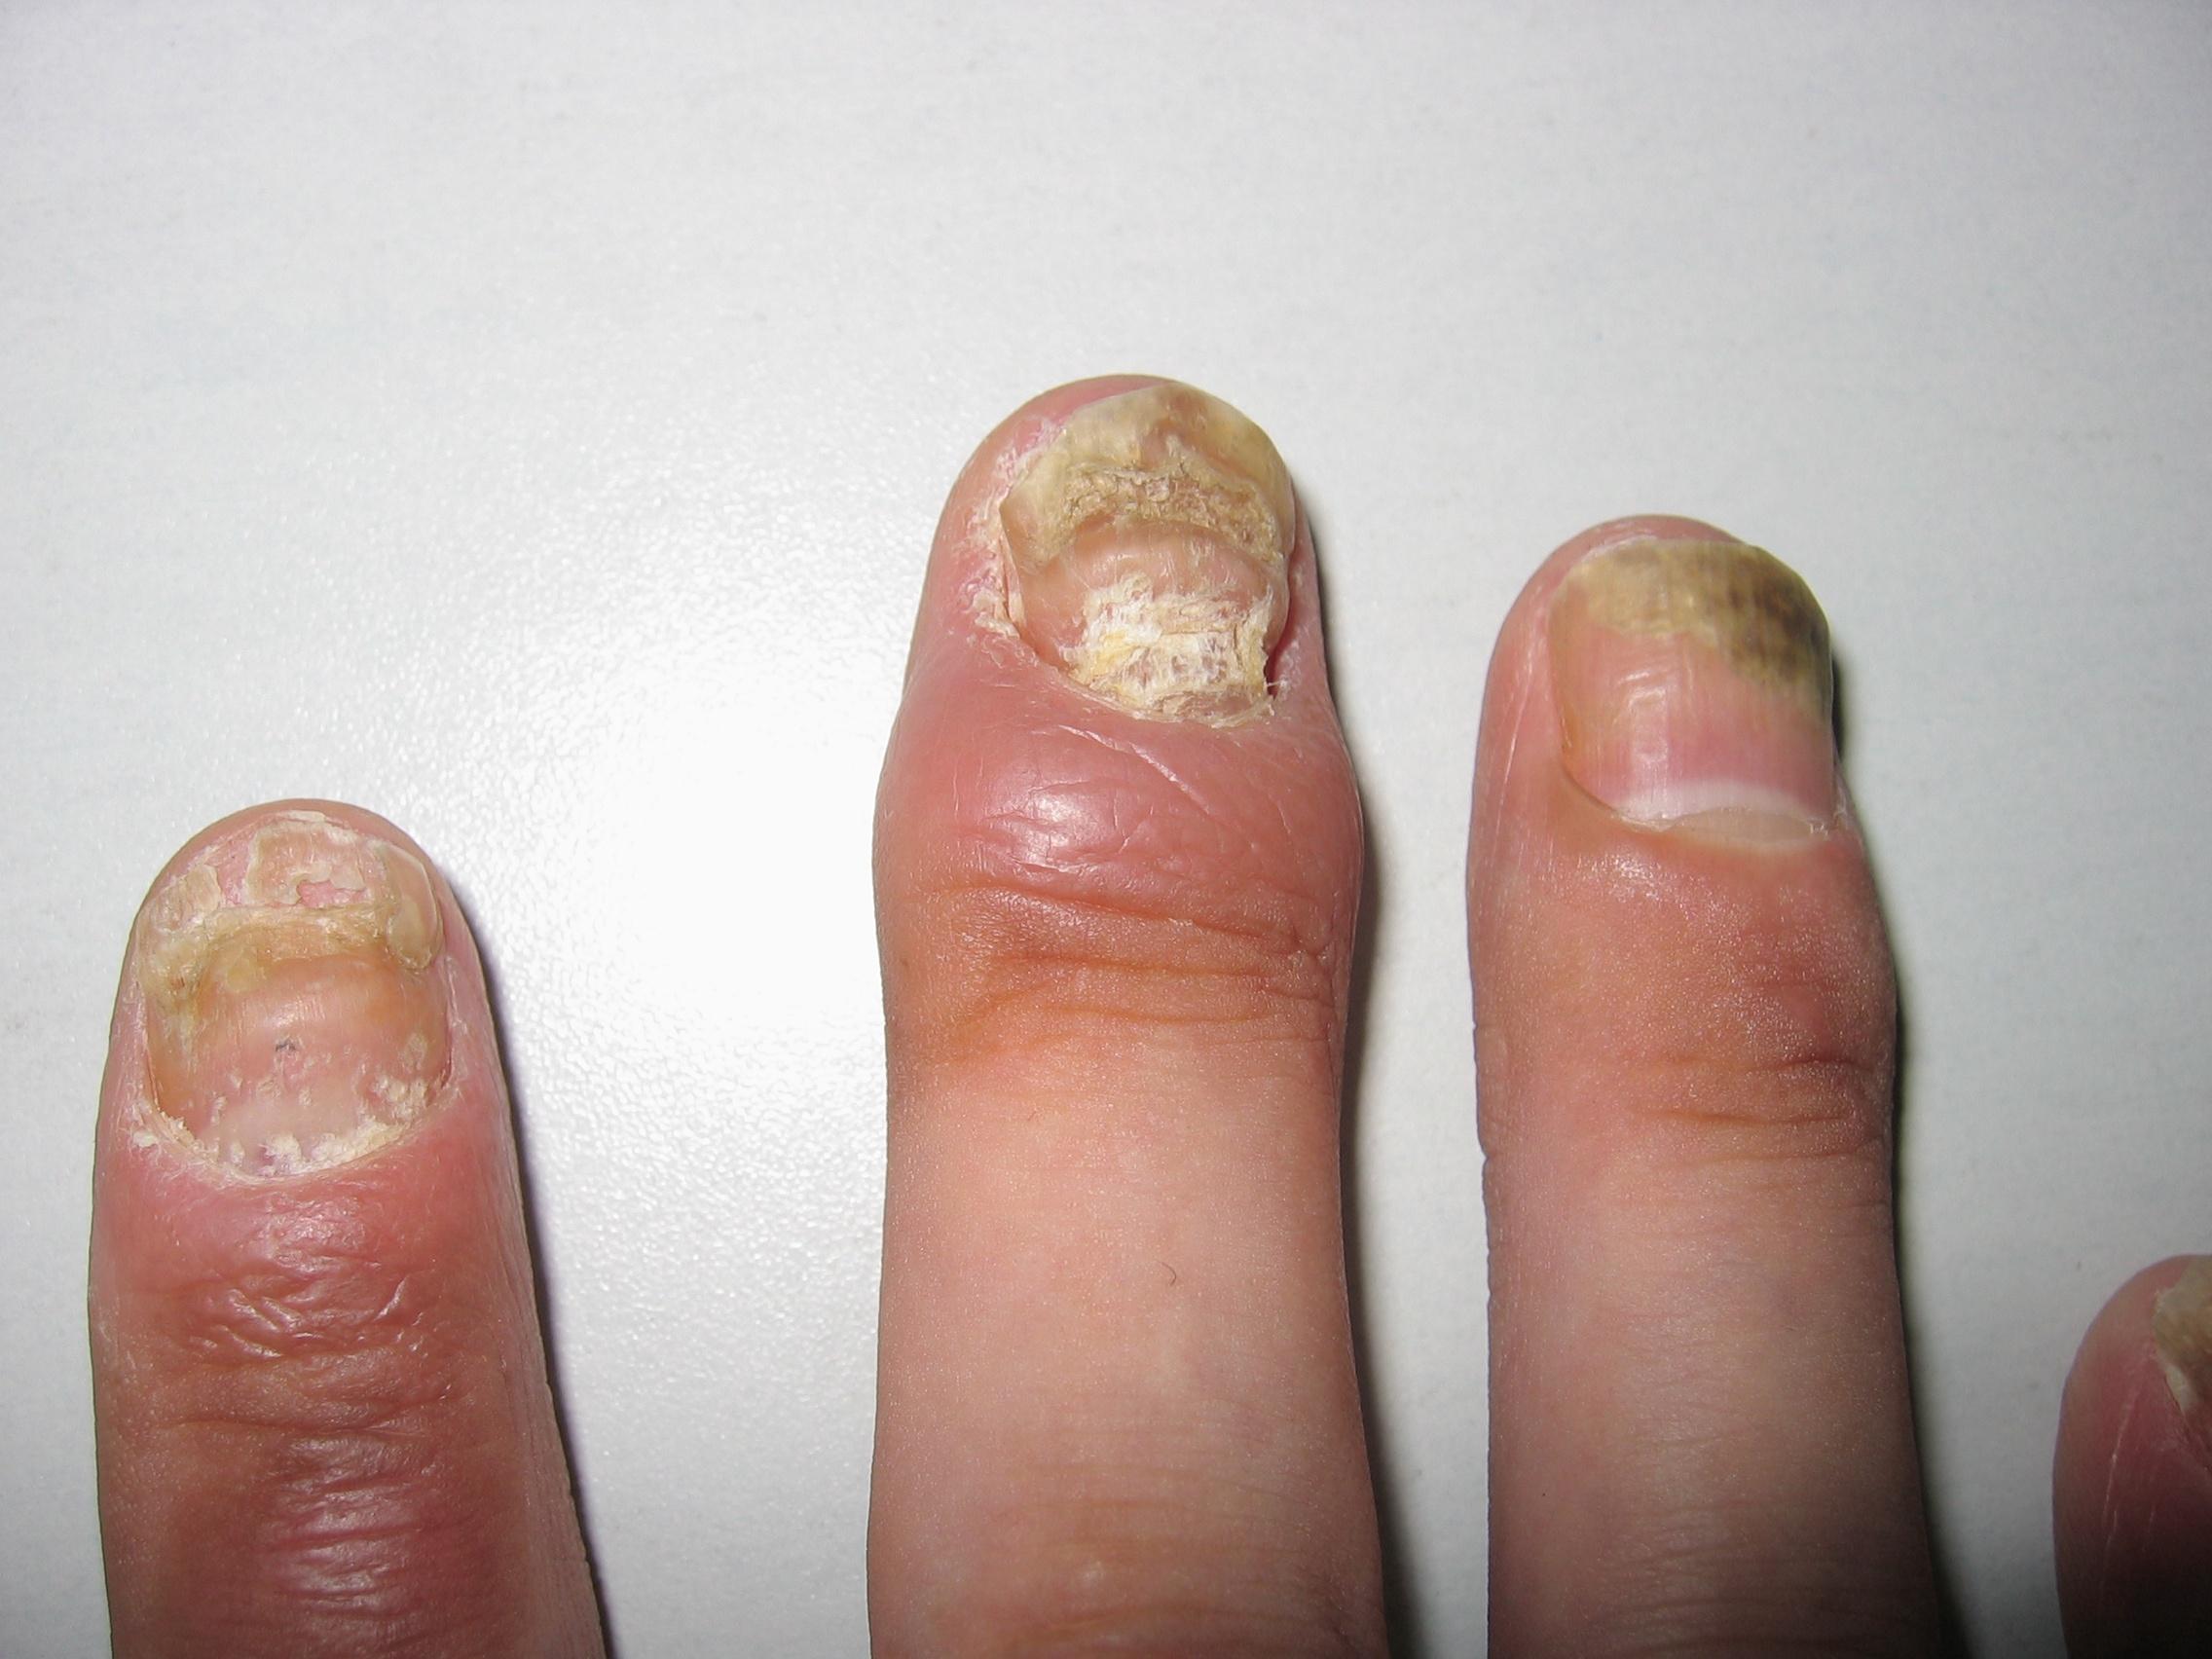 指甲银屑病图片 初期图片